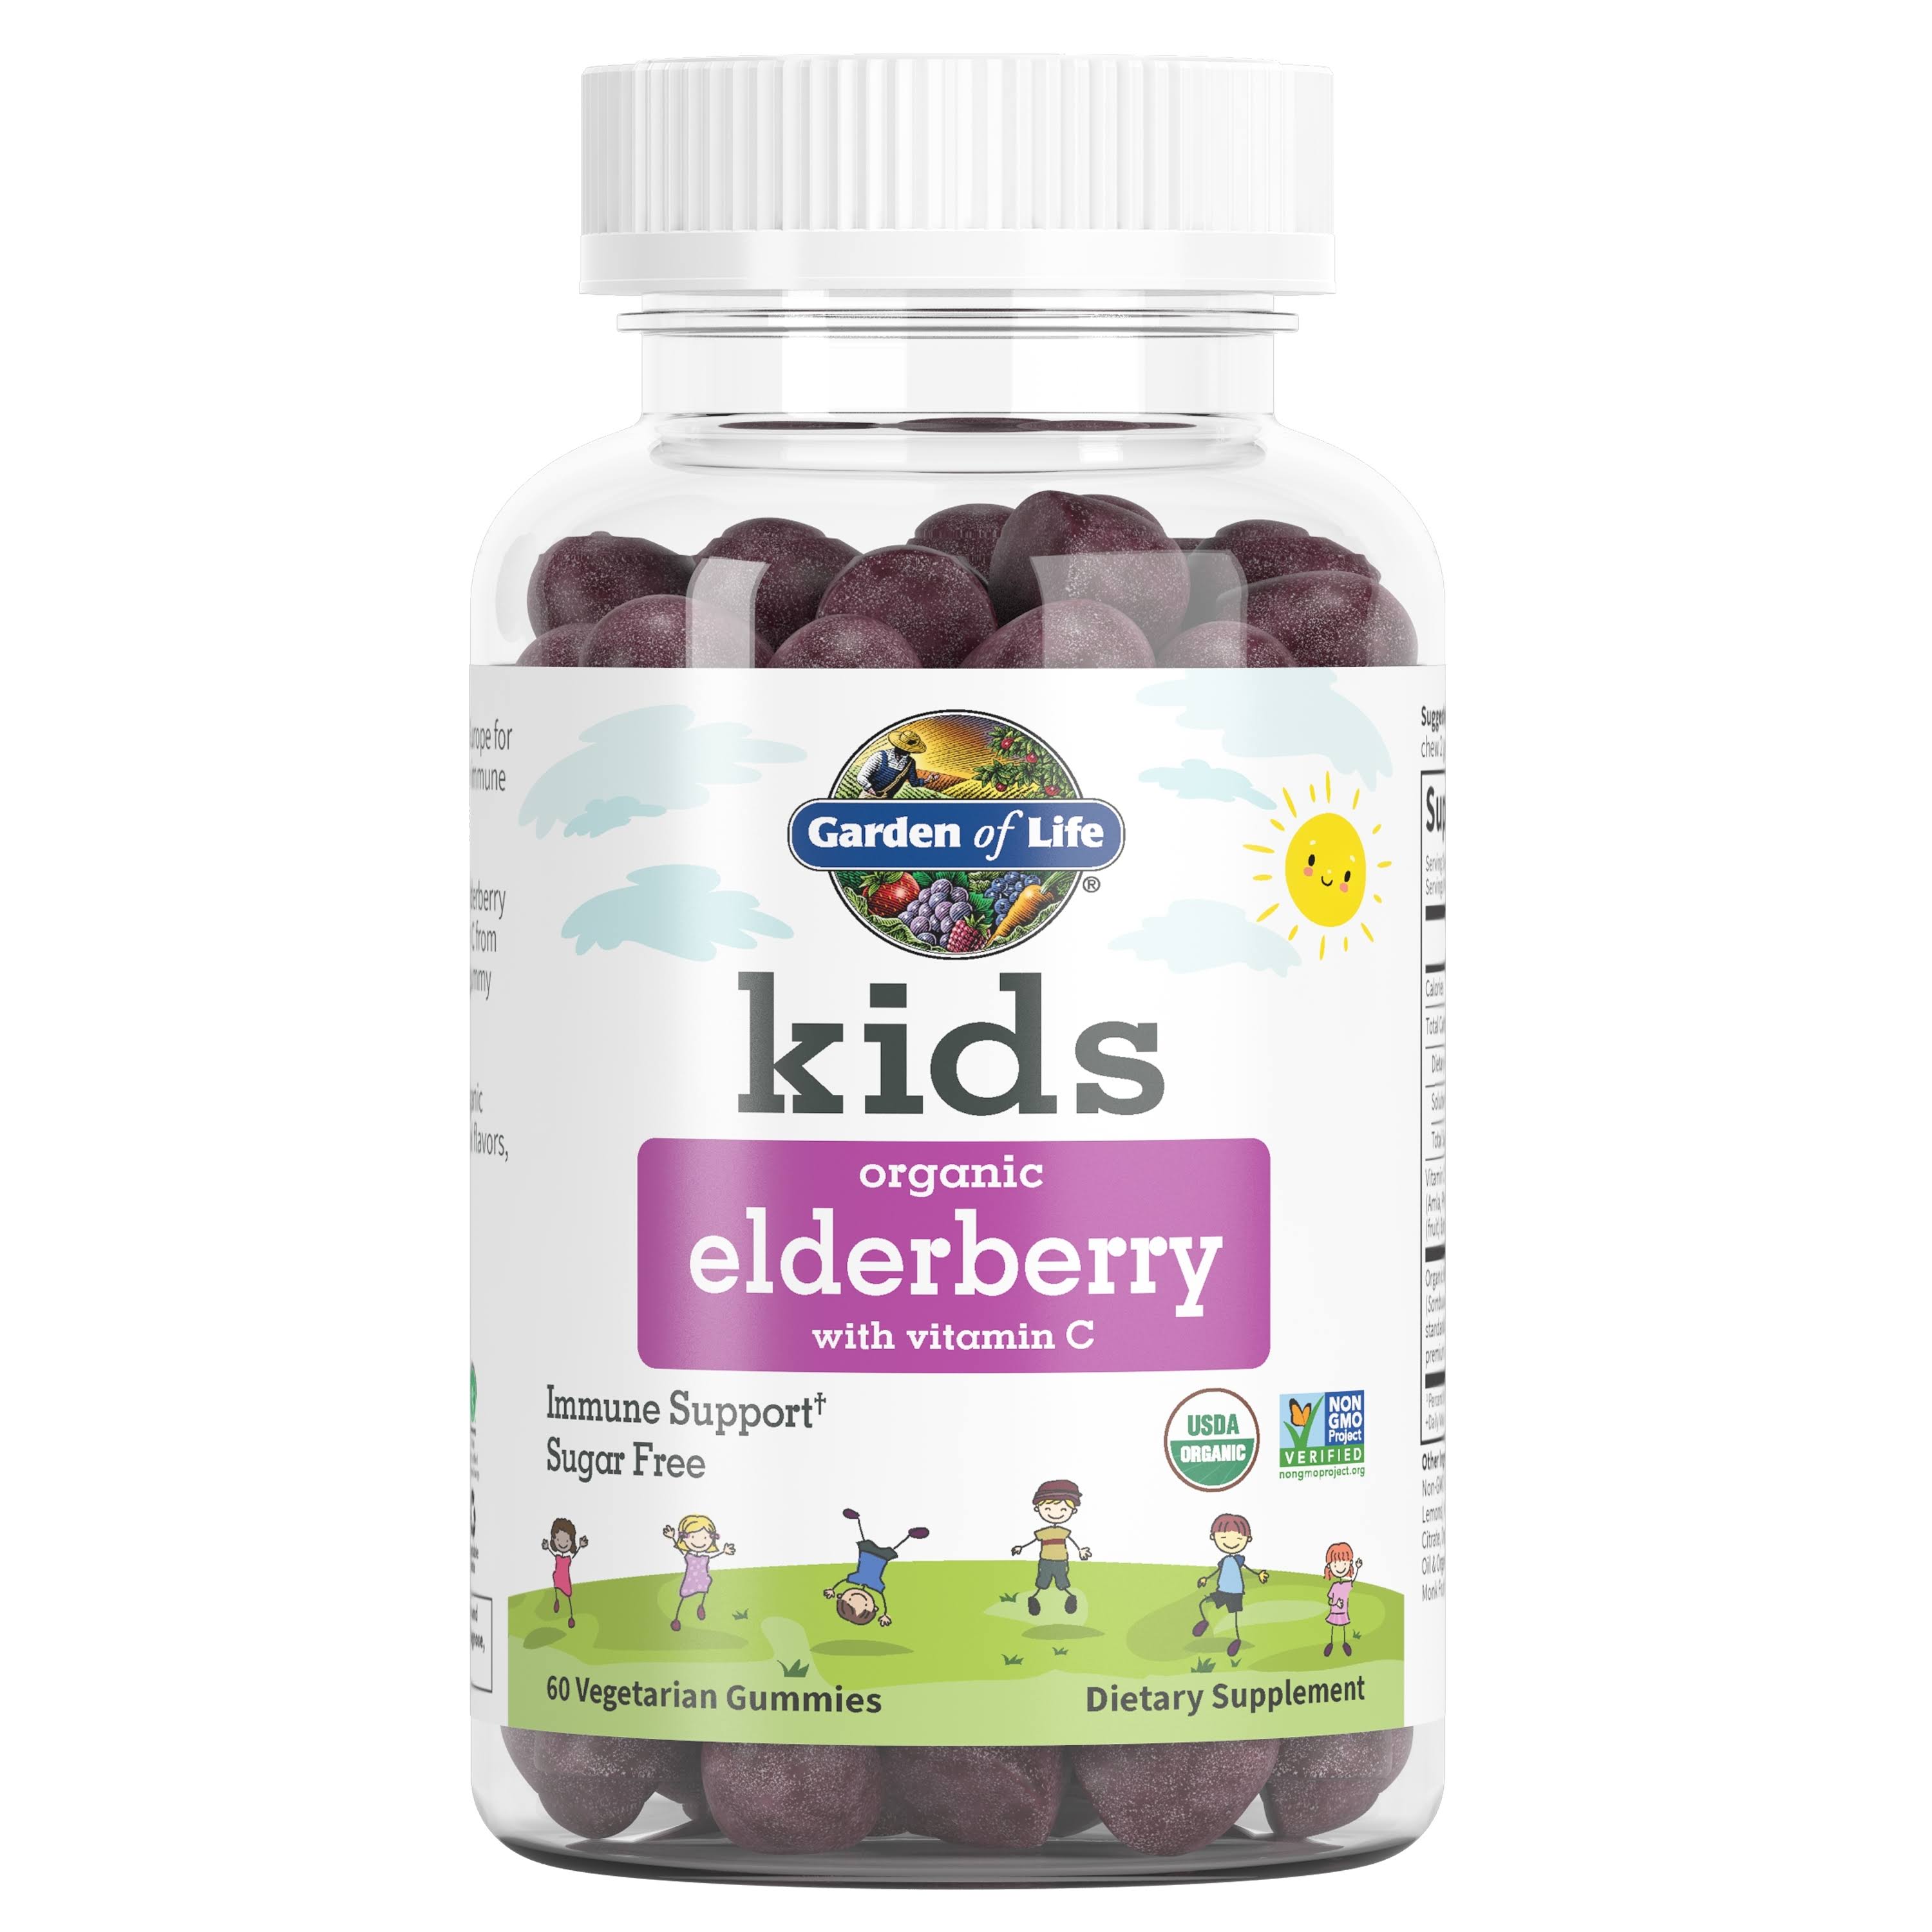 Garden of Life Kids Organic Elderberry with Vitamin C 60 Vegetarian Gummies